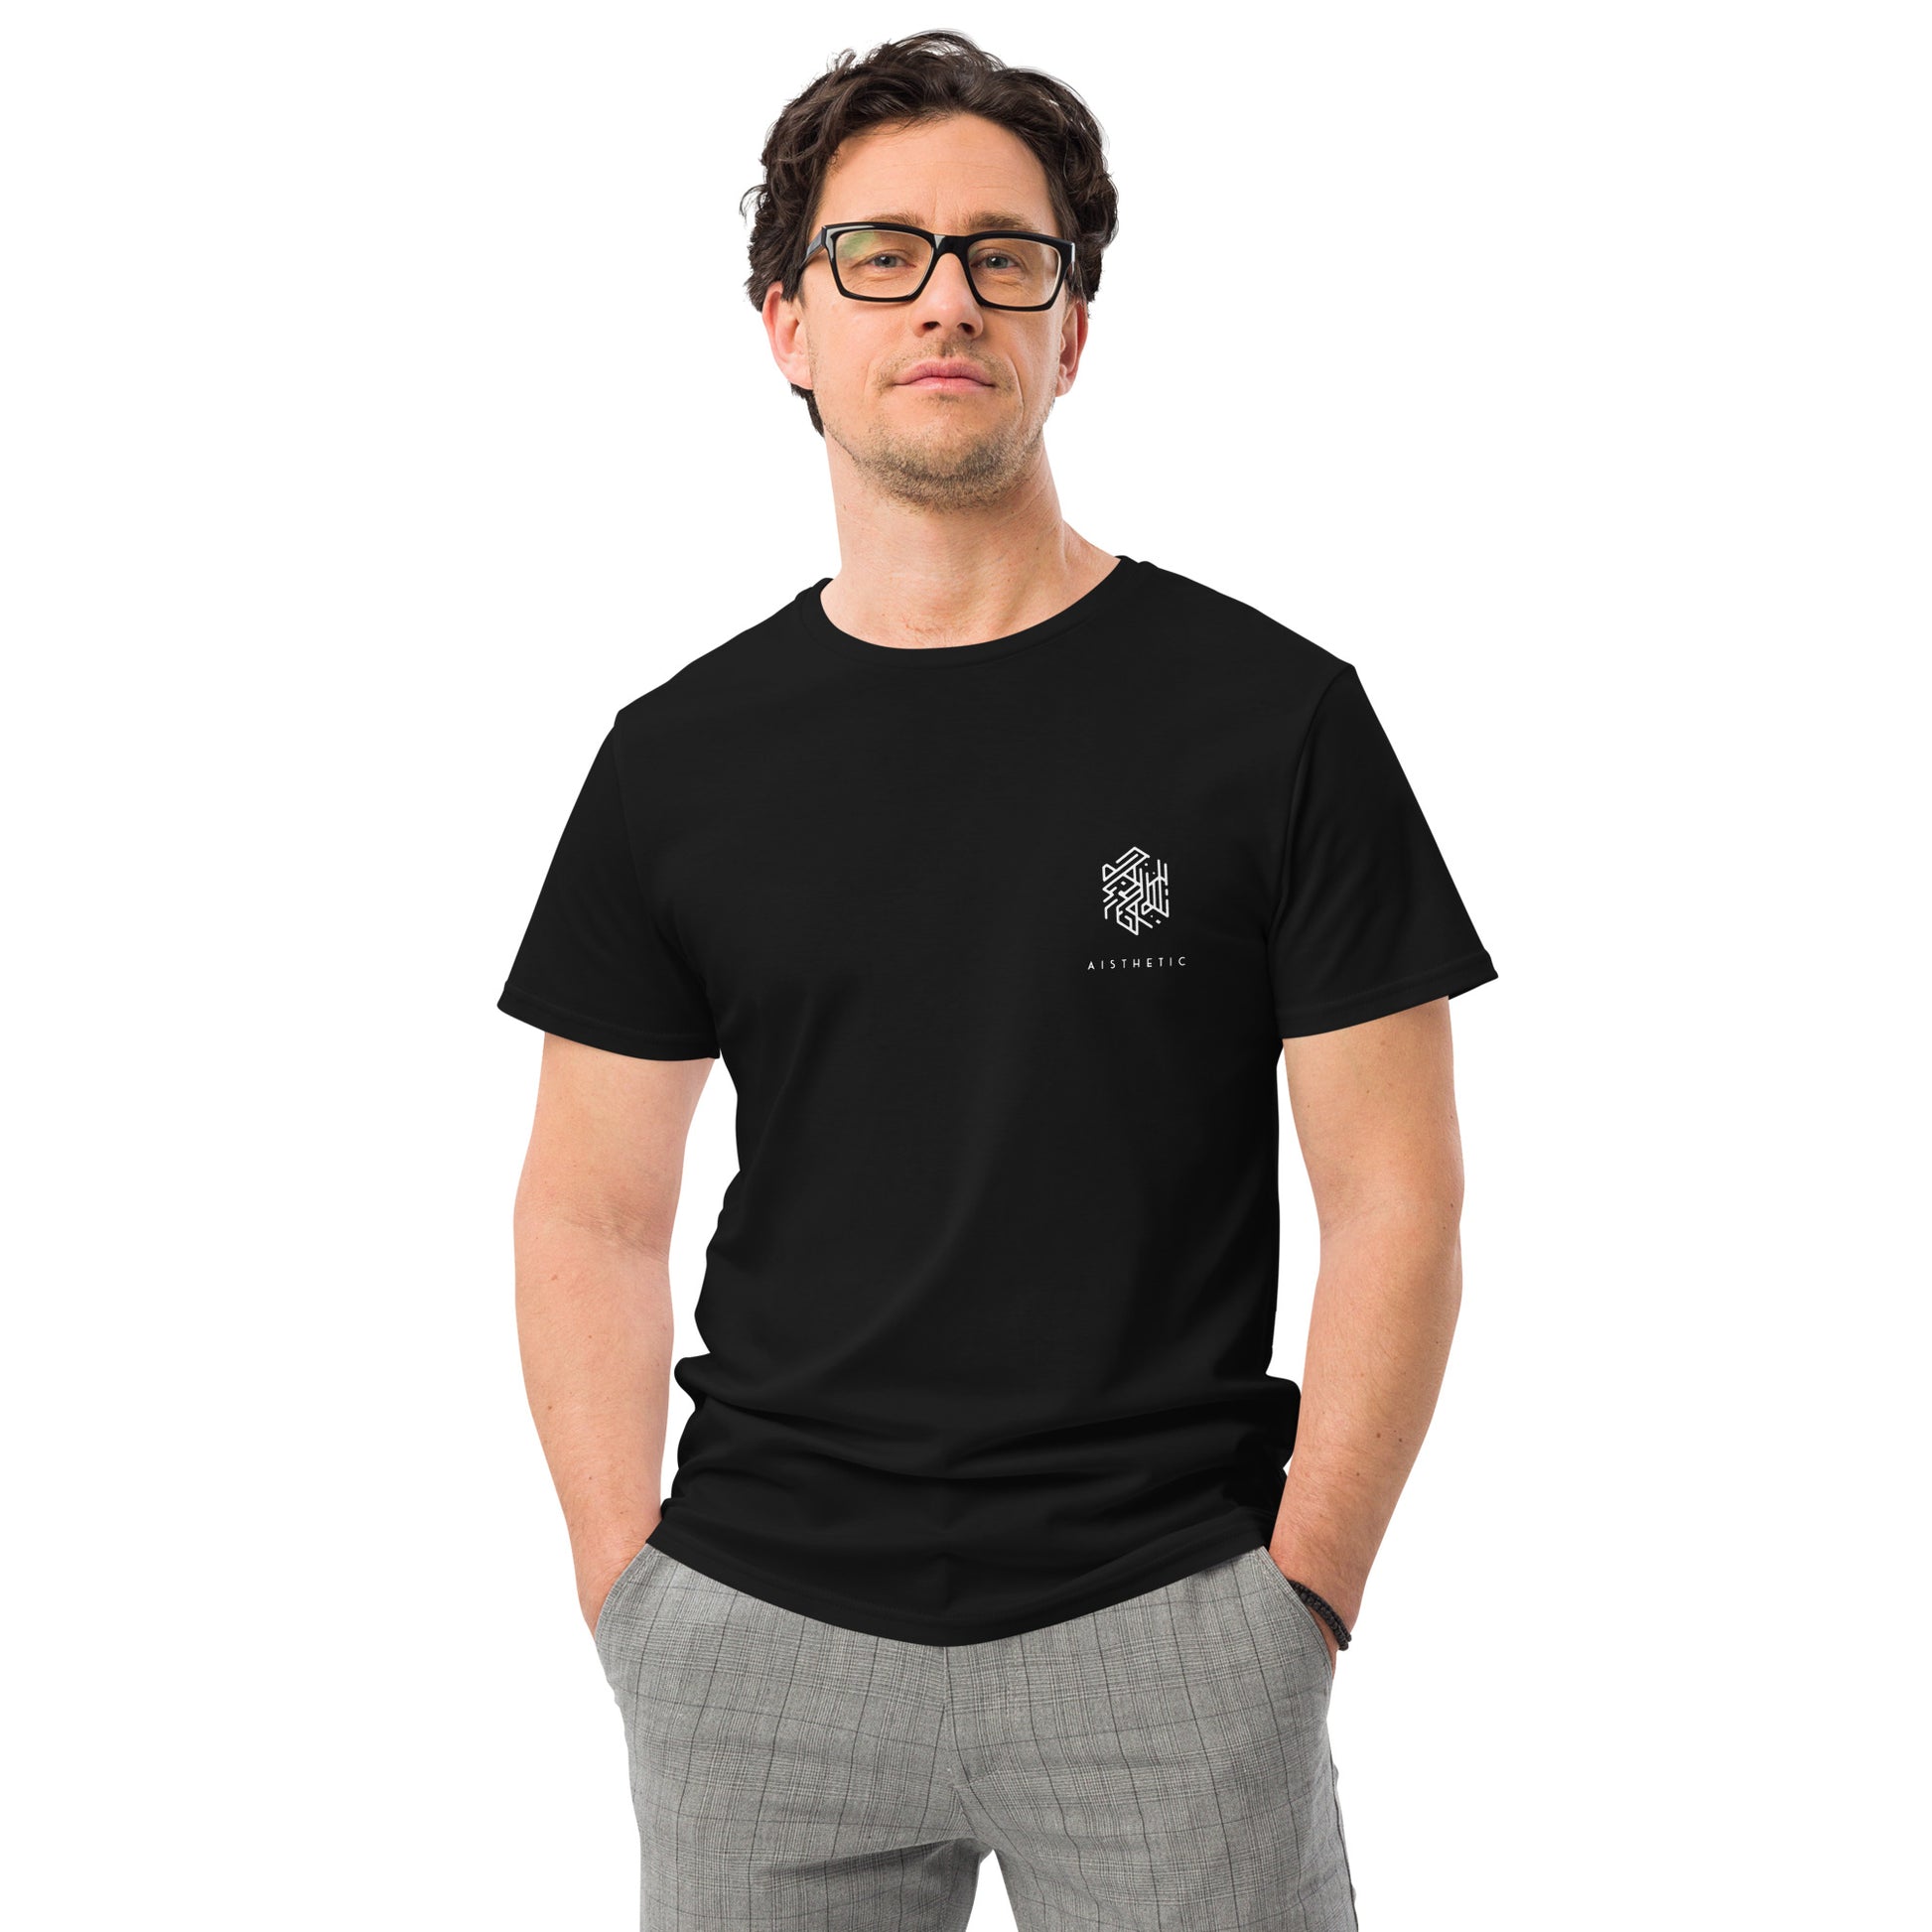 mens-premium-cotton-t-shirt-black-front-642f8ff41894d